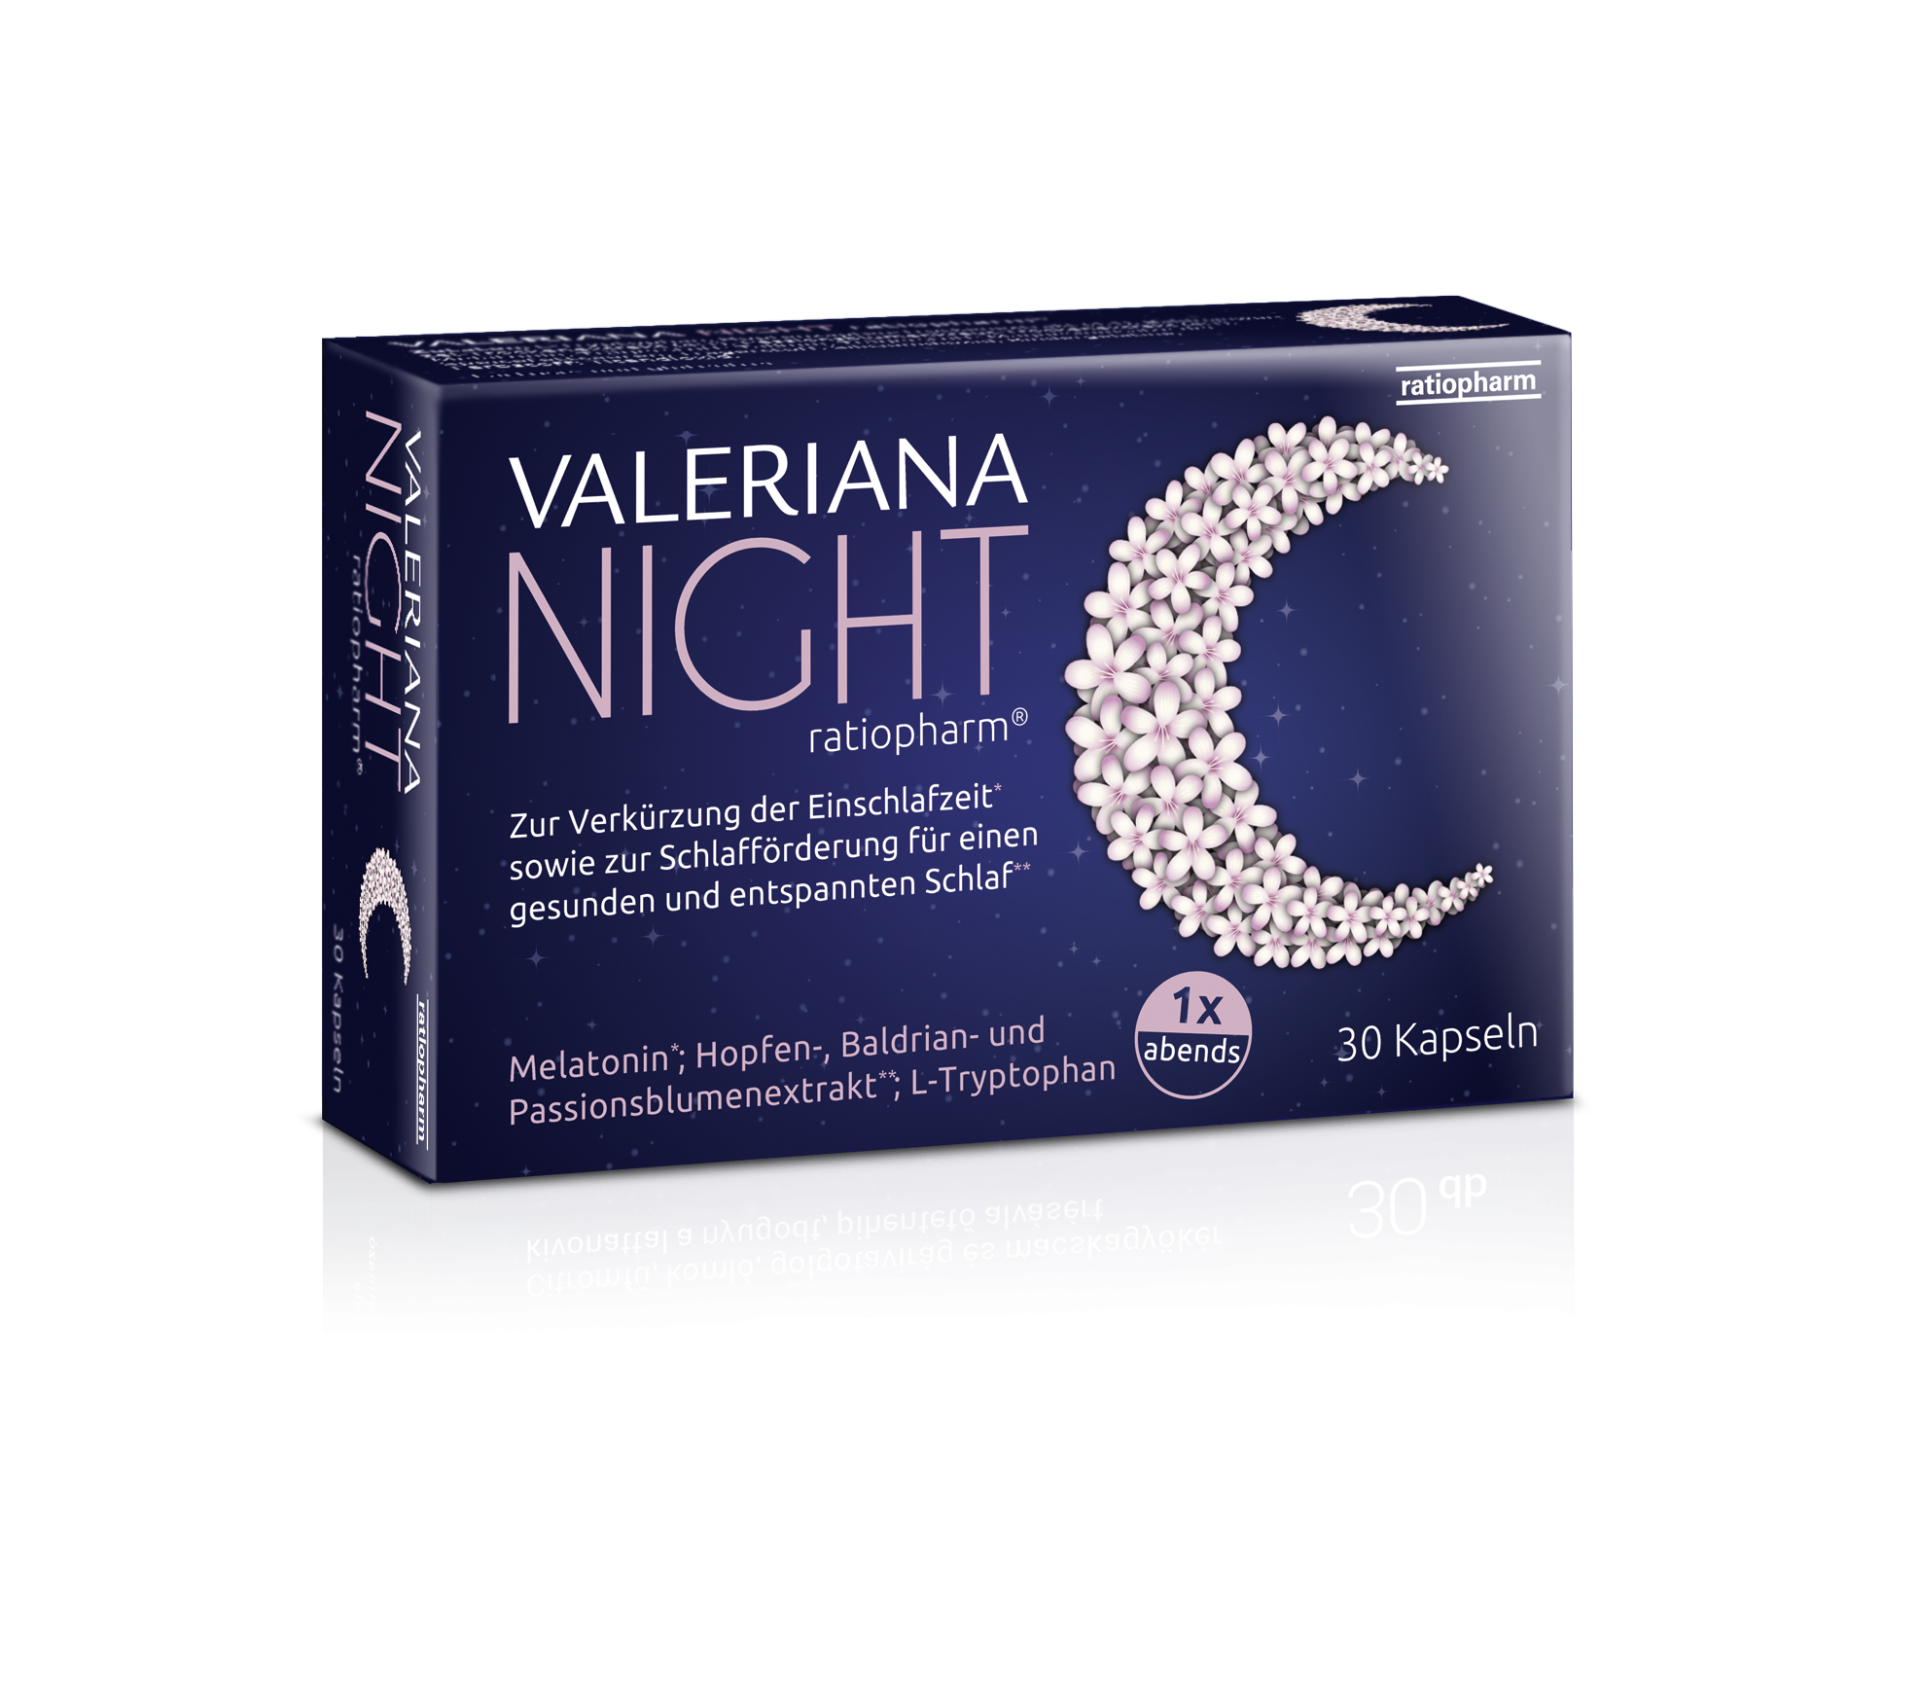 Valeriana NIGHT ratiopharm® (30 Stk.)